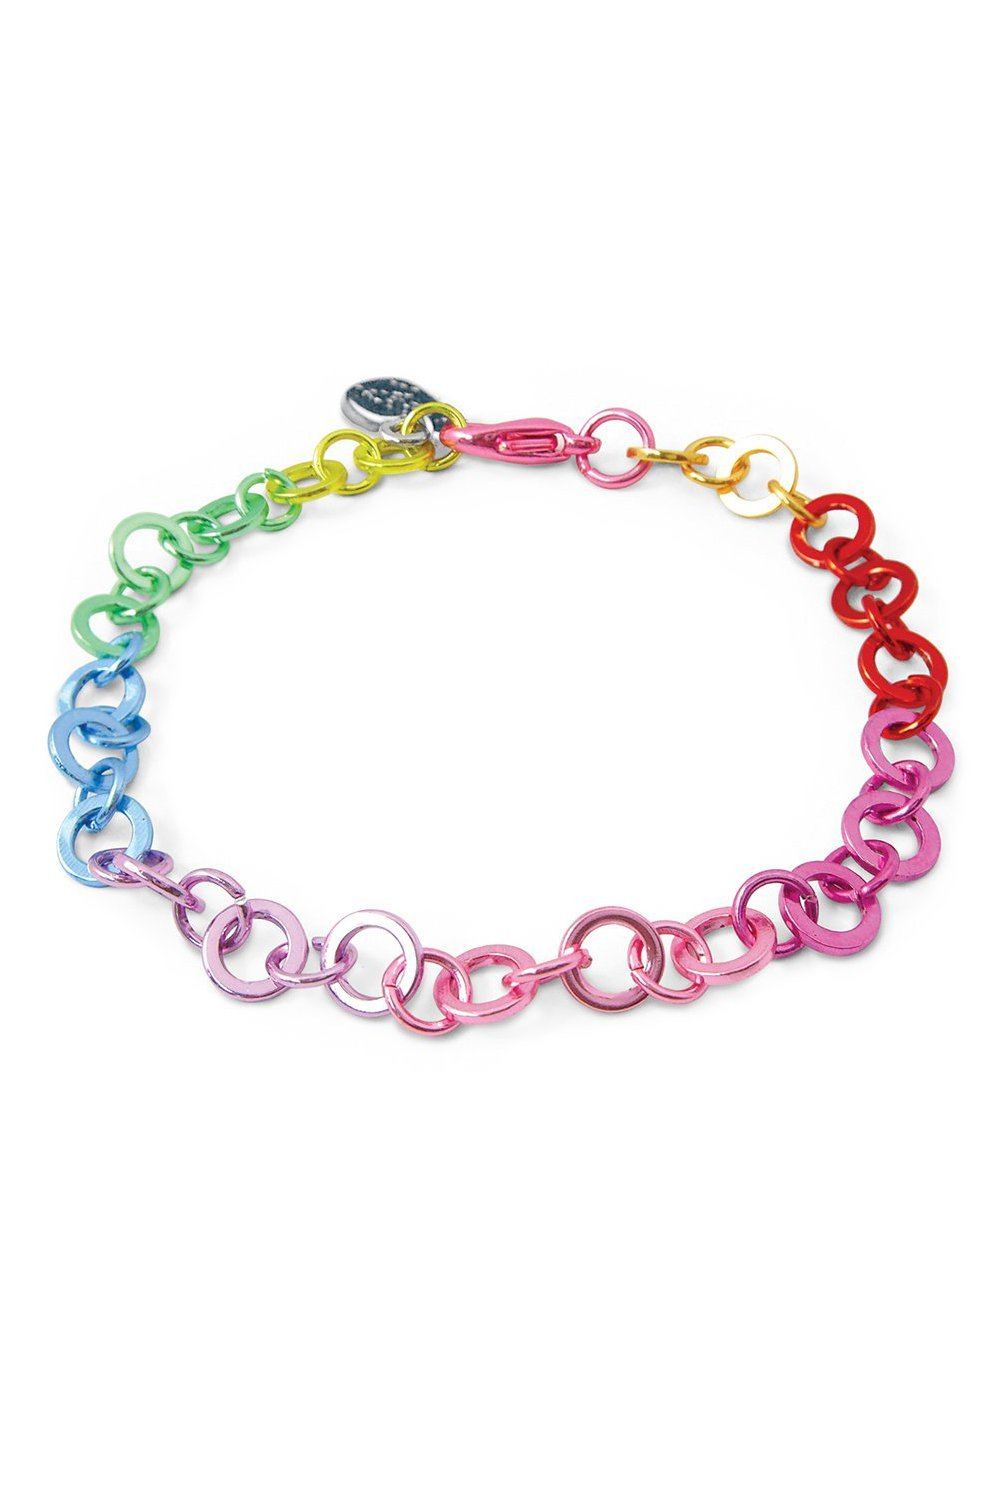 Rainbow Chain Bracelet - Tea for Three: A Children's Boutique-New Arrivals-TheT43Shop